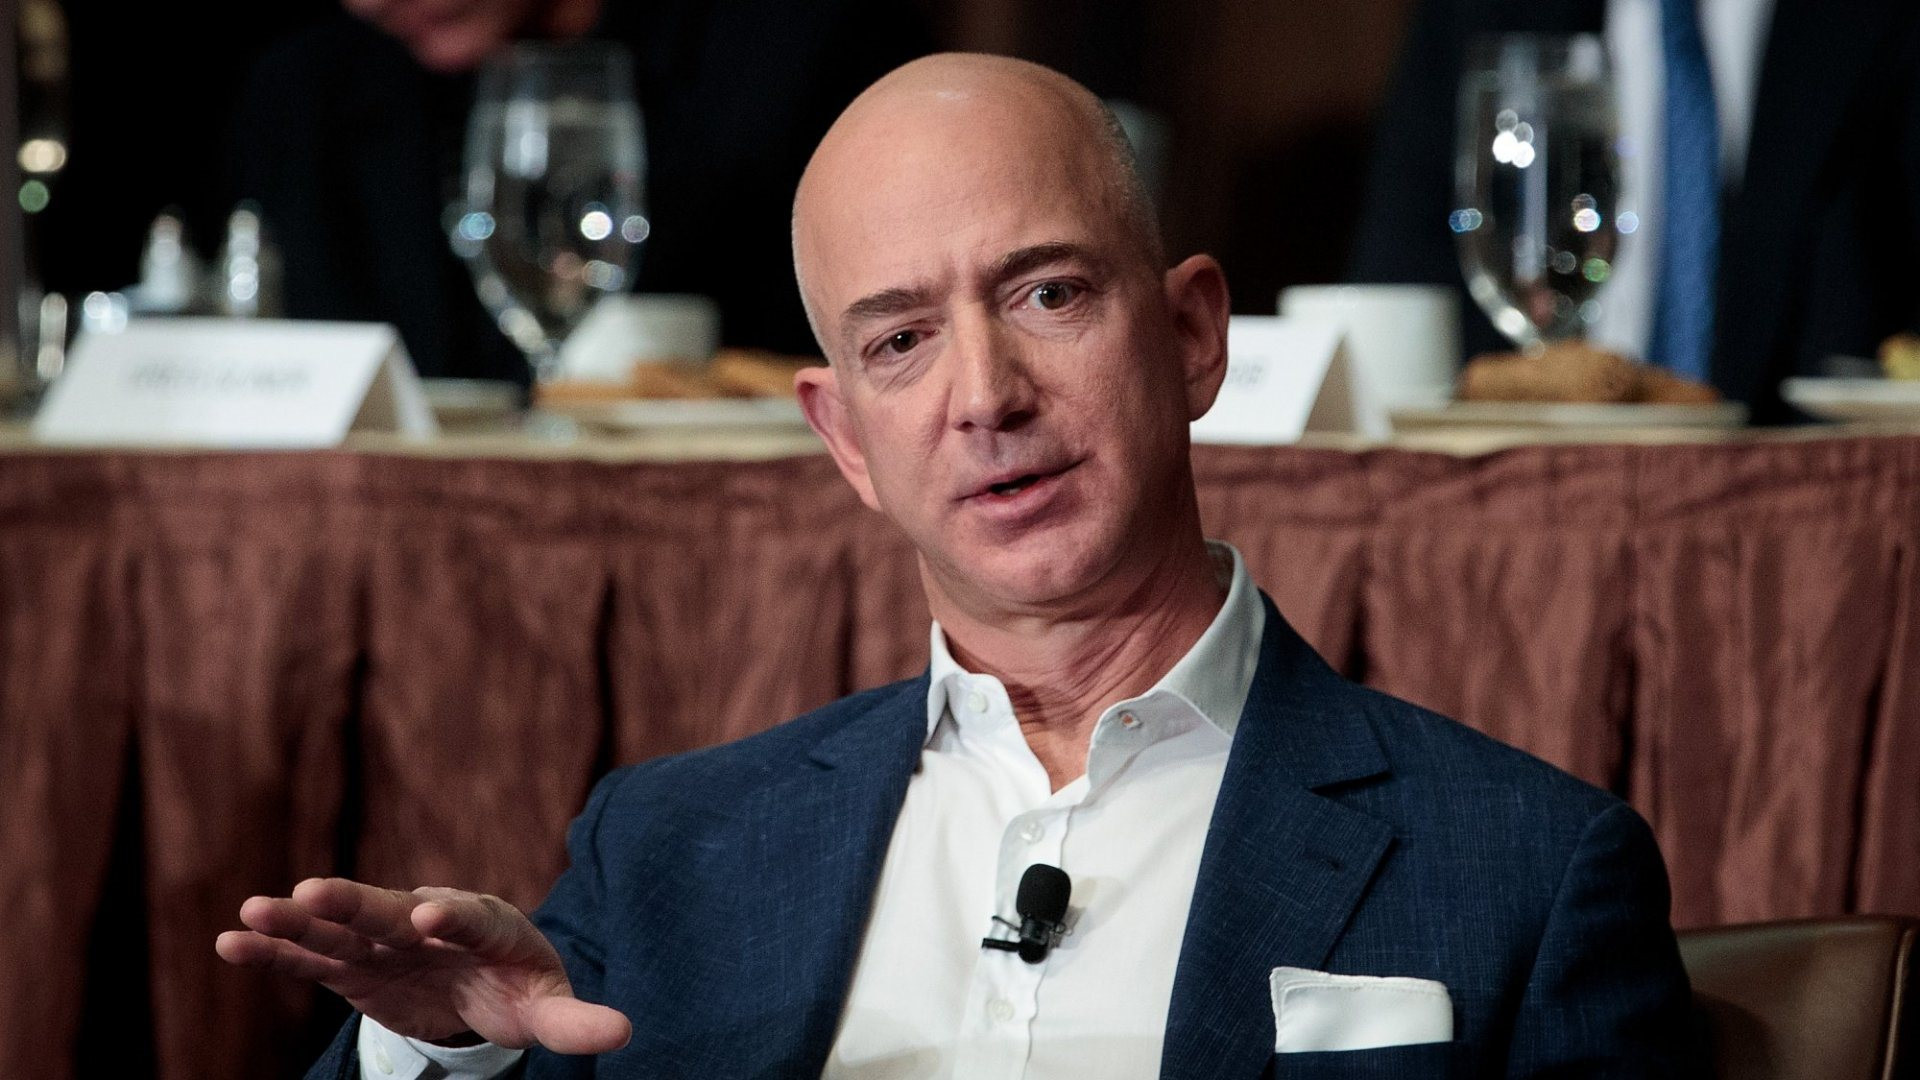 Phong cách họp đáng học hỏi của Jeff Bezos: Báo cáo nhiều chẳng tác dụng gì, nếu là sếp thì nên 'im' cho tới cuối buổi - Ảnh 1.